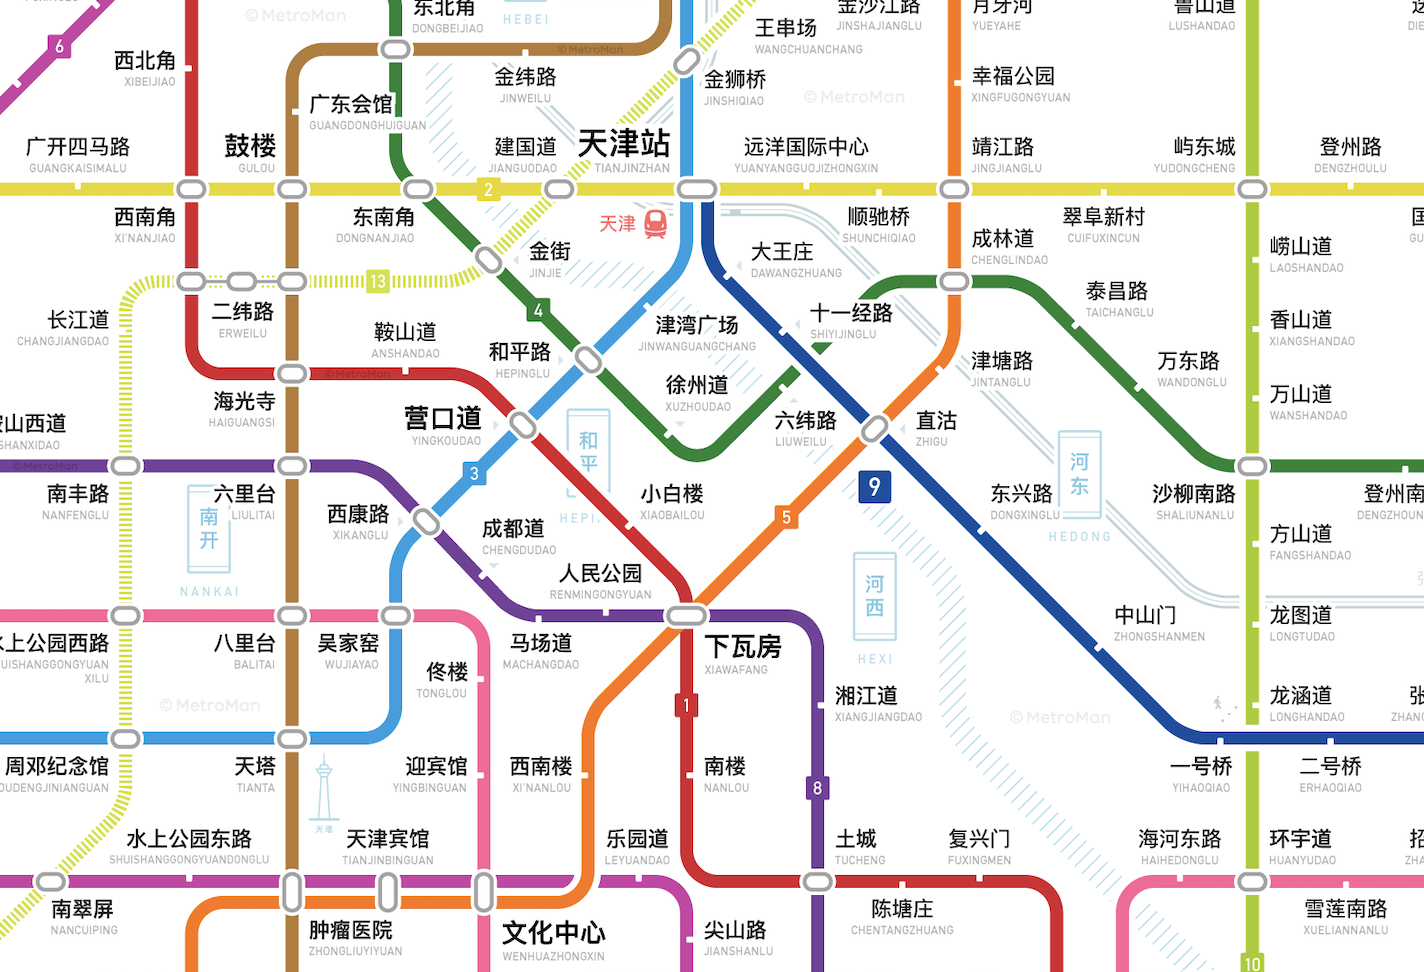 天津轨道交通图20212027